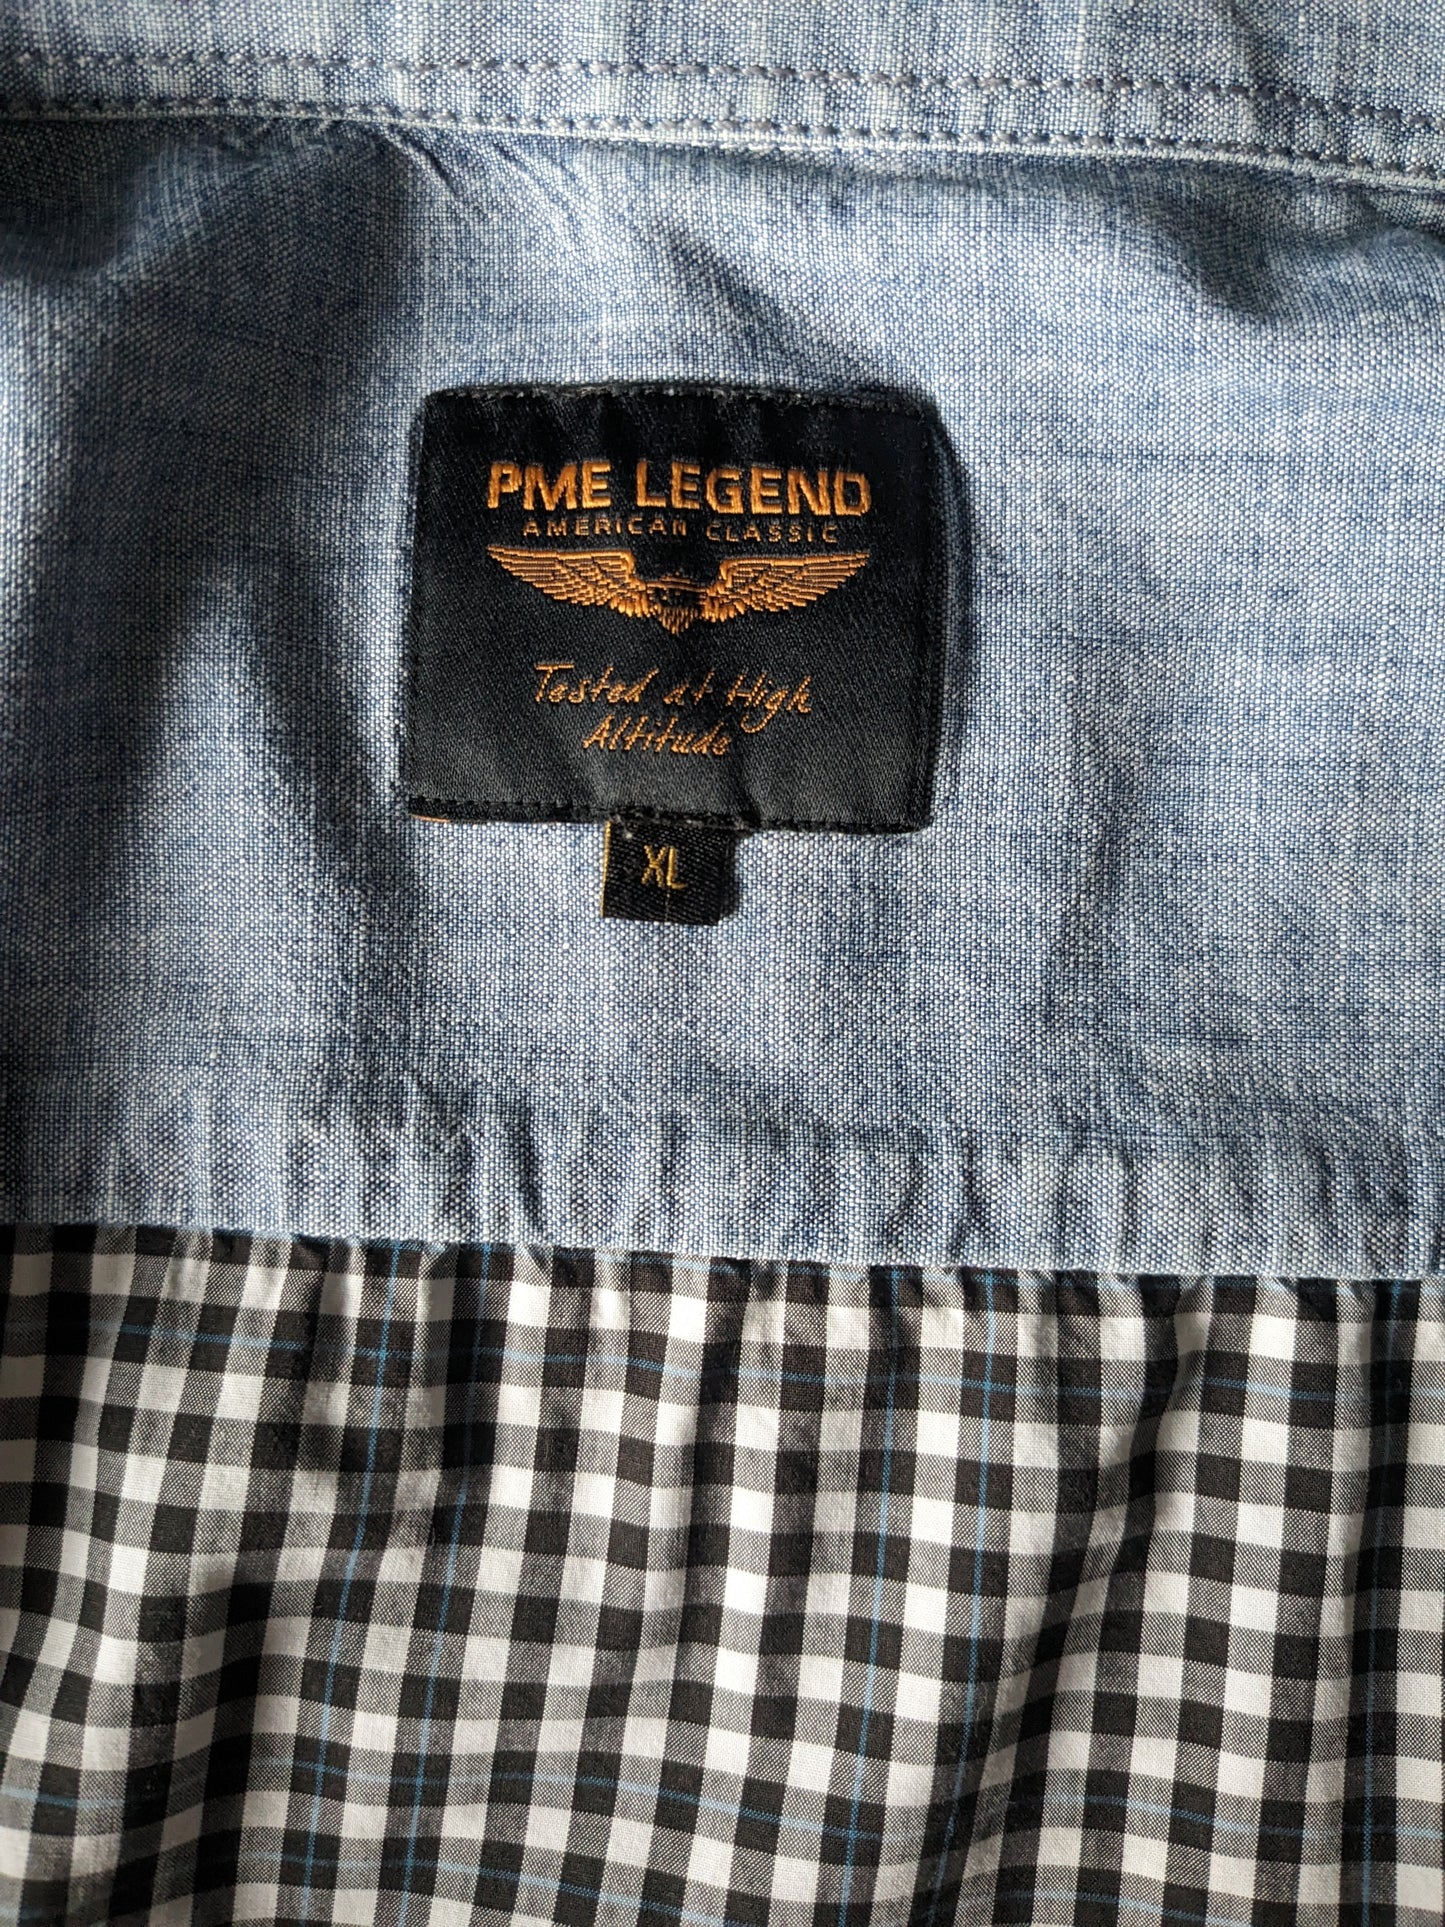 Shirt leggenda PME. Bloccato in bianco e nero con linea blu e cuciture. Taglia XL.